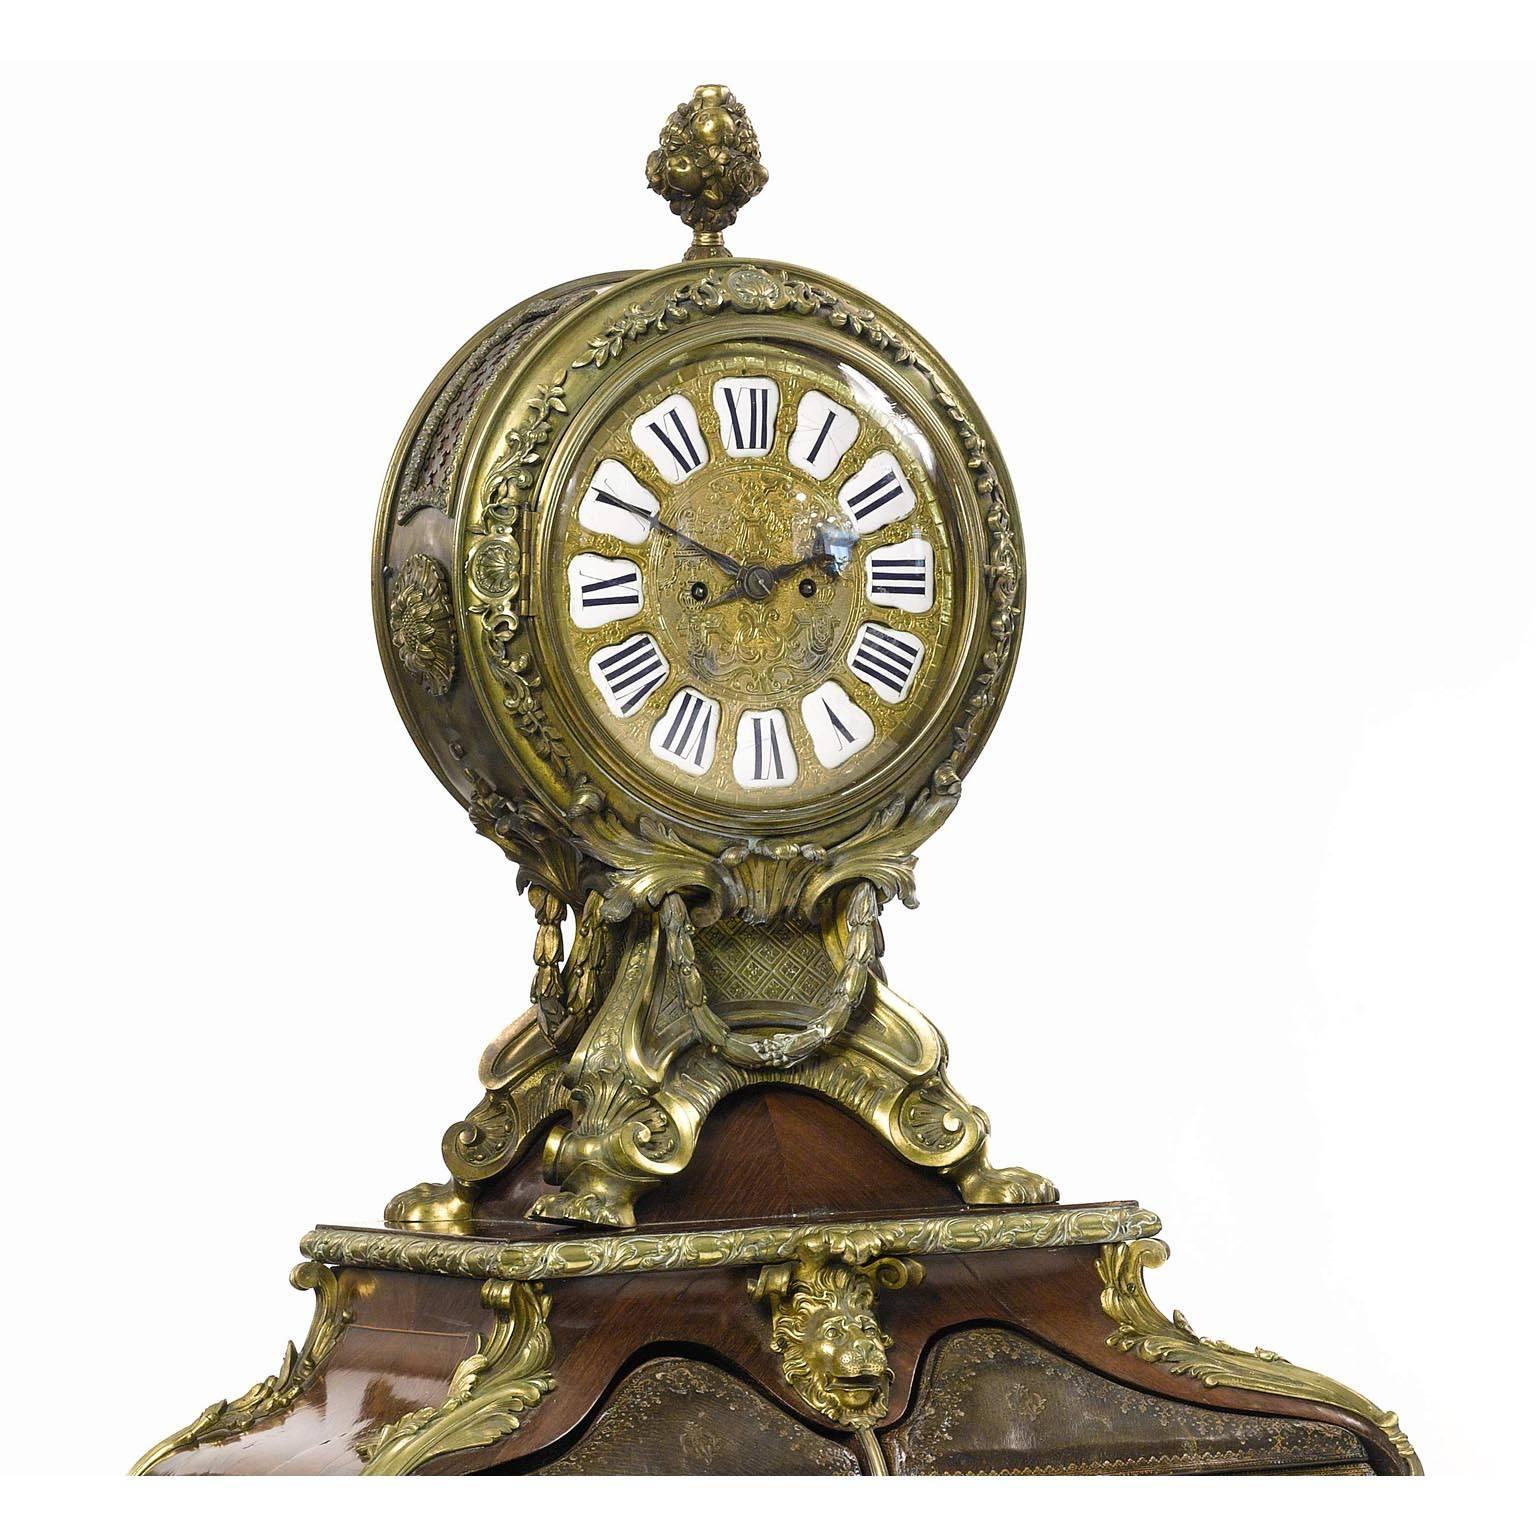 Très beau cartonnier de style Louis XV français du XIXe siècle, monté en bronze doré, en cuir, en bois de tulipier et en parquet de bois de roi, avec horloge. L'horloge circulaire présente un boîtier ajouré élaboré avec des panneaux réticulés